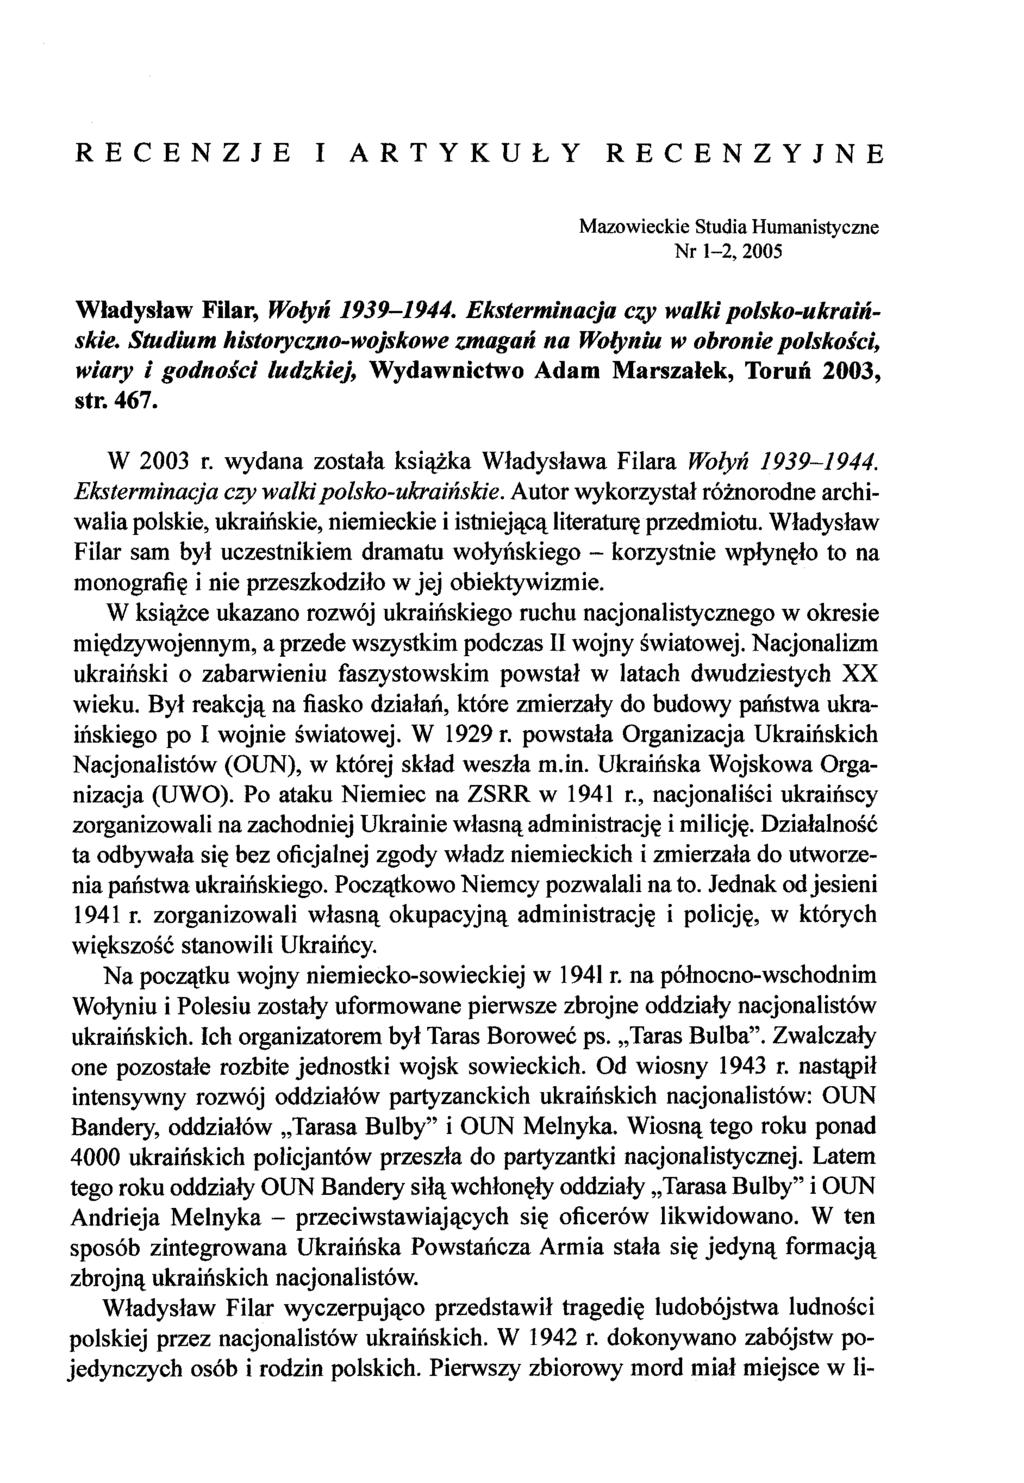 RECENZJE I ARTYKUŁY RECENZYJNE Mazowieckie Studia Humanistyczne Nr 1-2, 2005 Władysław Filar, Wołyń 1939-1944. Eksterminacja czy walki polsko-ukraińskie.